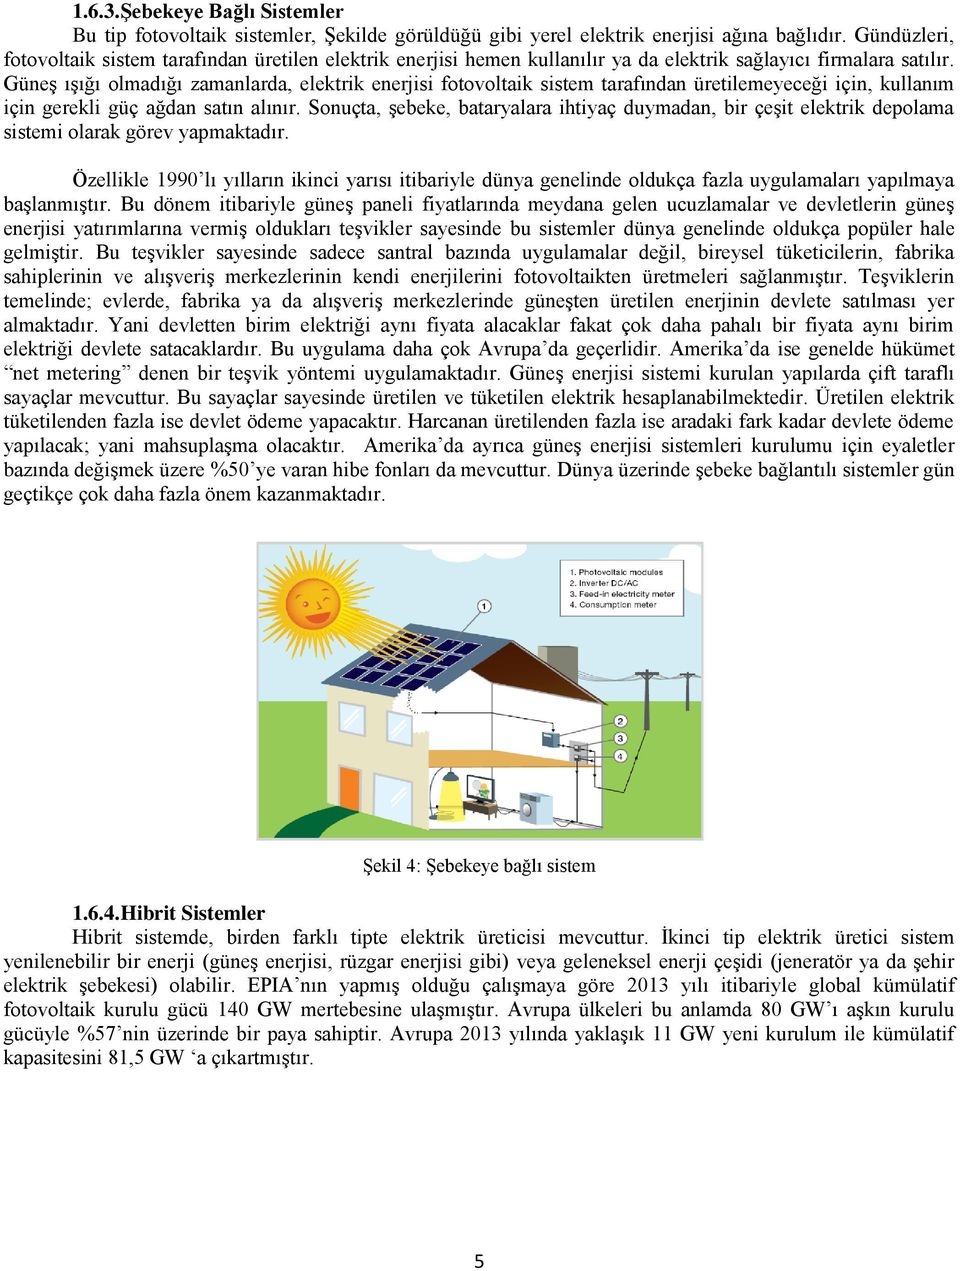 Güneş ışığı olmadığı zamanlarda, elektrik enerjisi fotovoltaik sistem tarafından üretilemeyeceği için, kullanım için gerekli güç ağdan satın alınır.